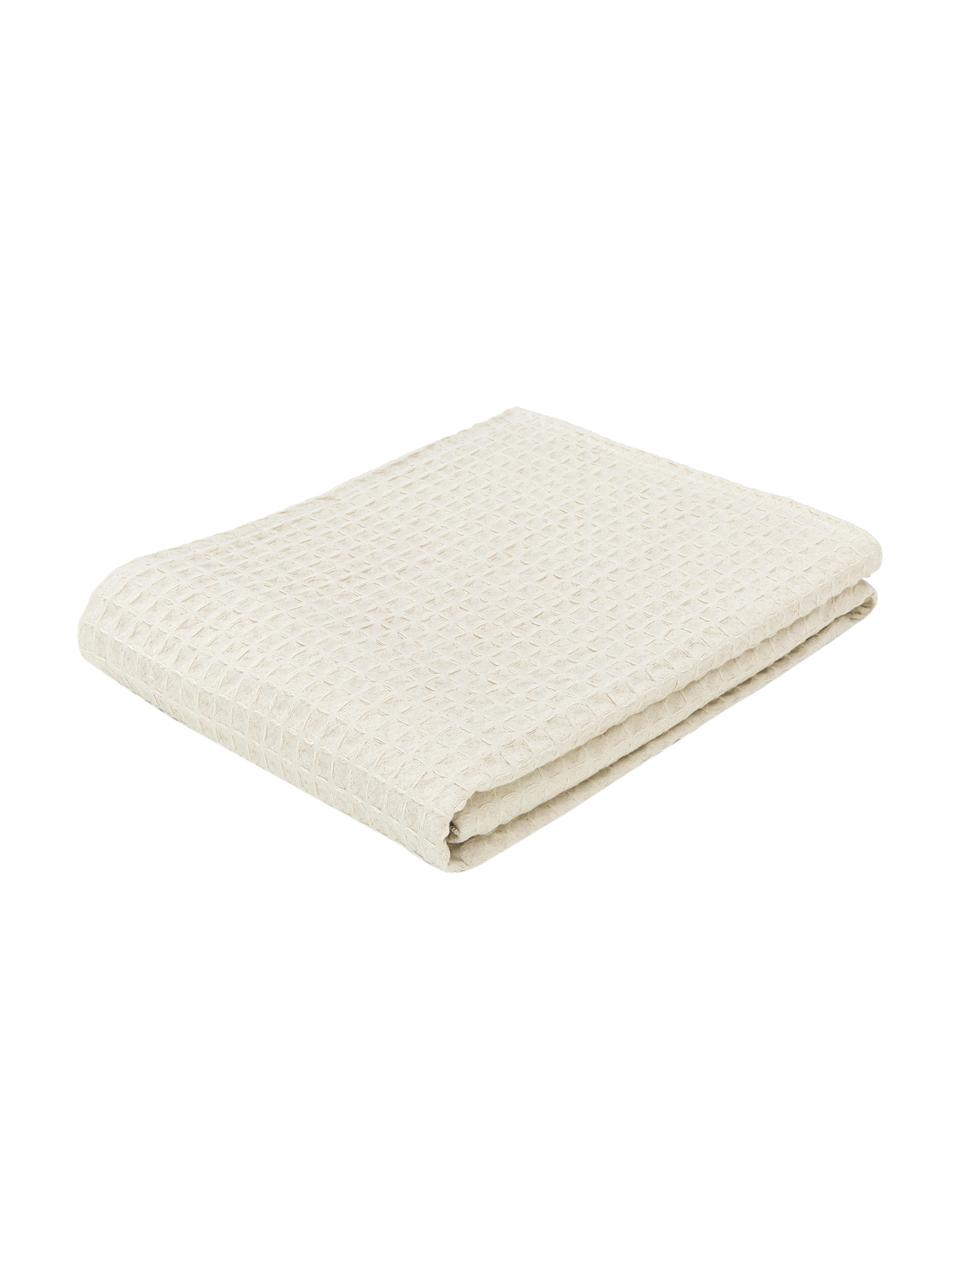 Colcha con estructura gofre Panal, 100% algodón, Blanco crema, An 270 x L 280 cm (para camas de 200 x 200 cm)